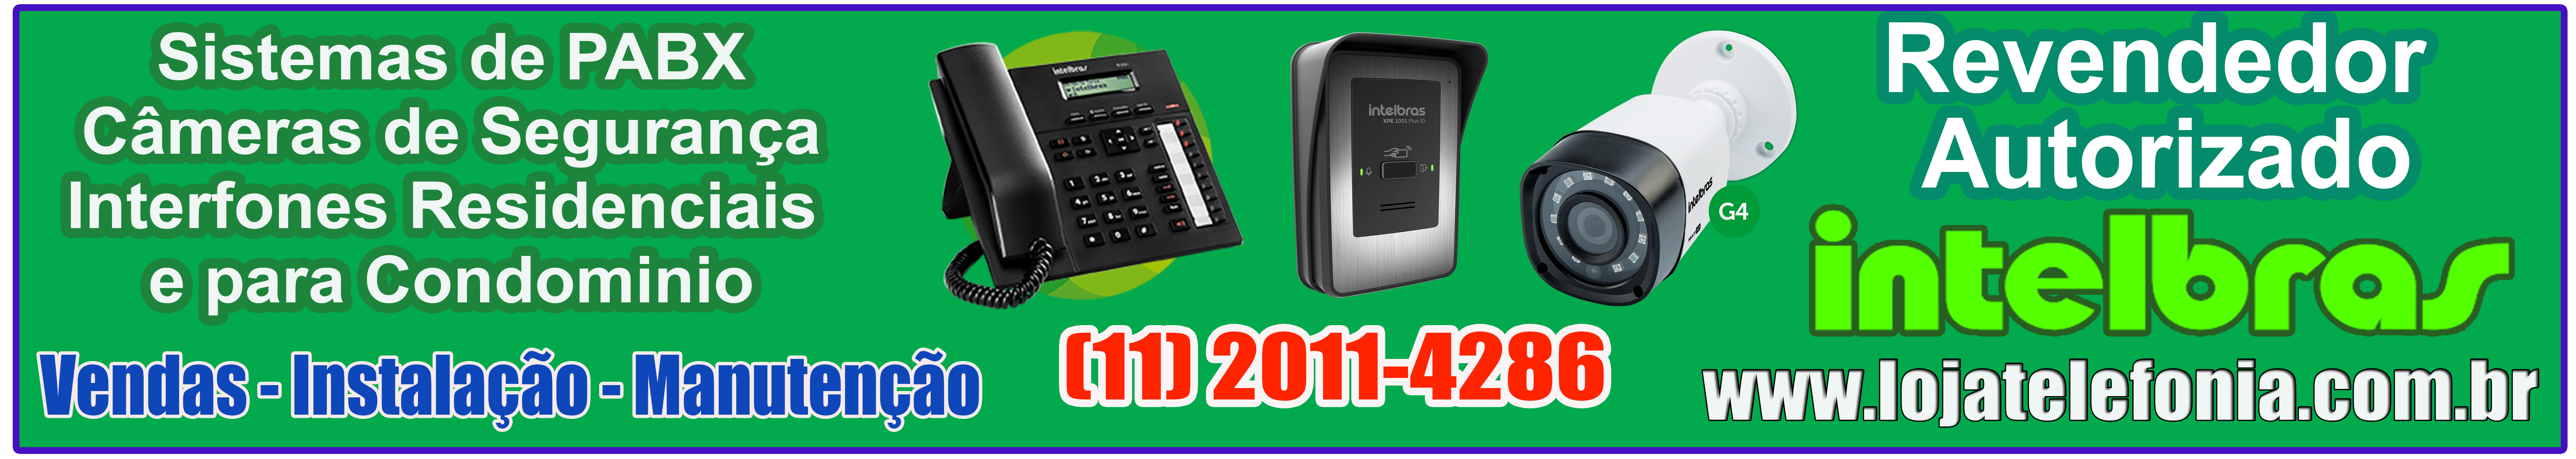 Instalao de Interfones - Intelbras Maxcom - Assistencia Tecnica - Vendas - ORAMENTO LIGUE: (11) 2011 4286